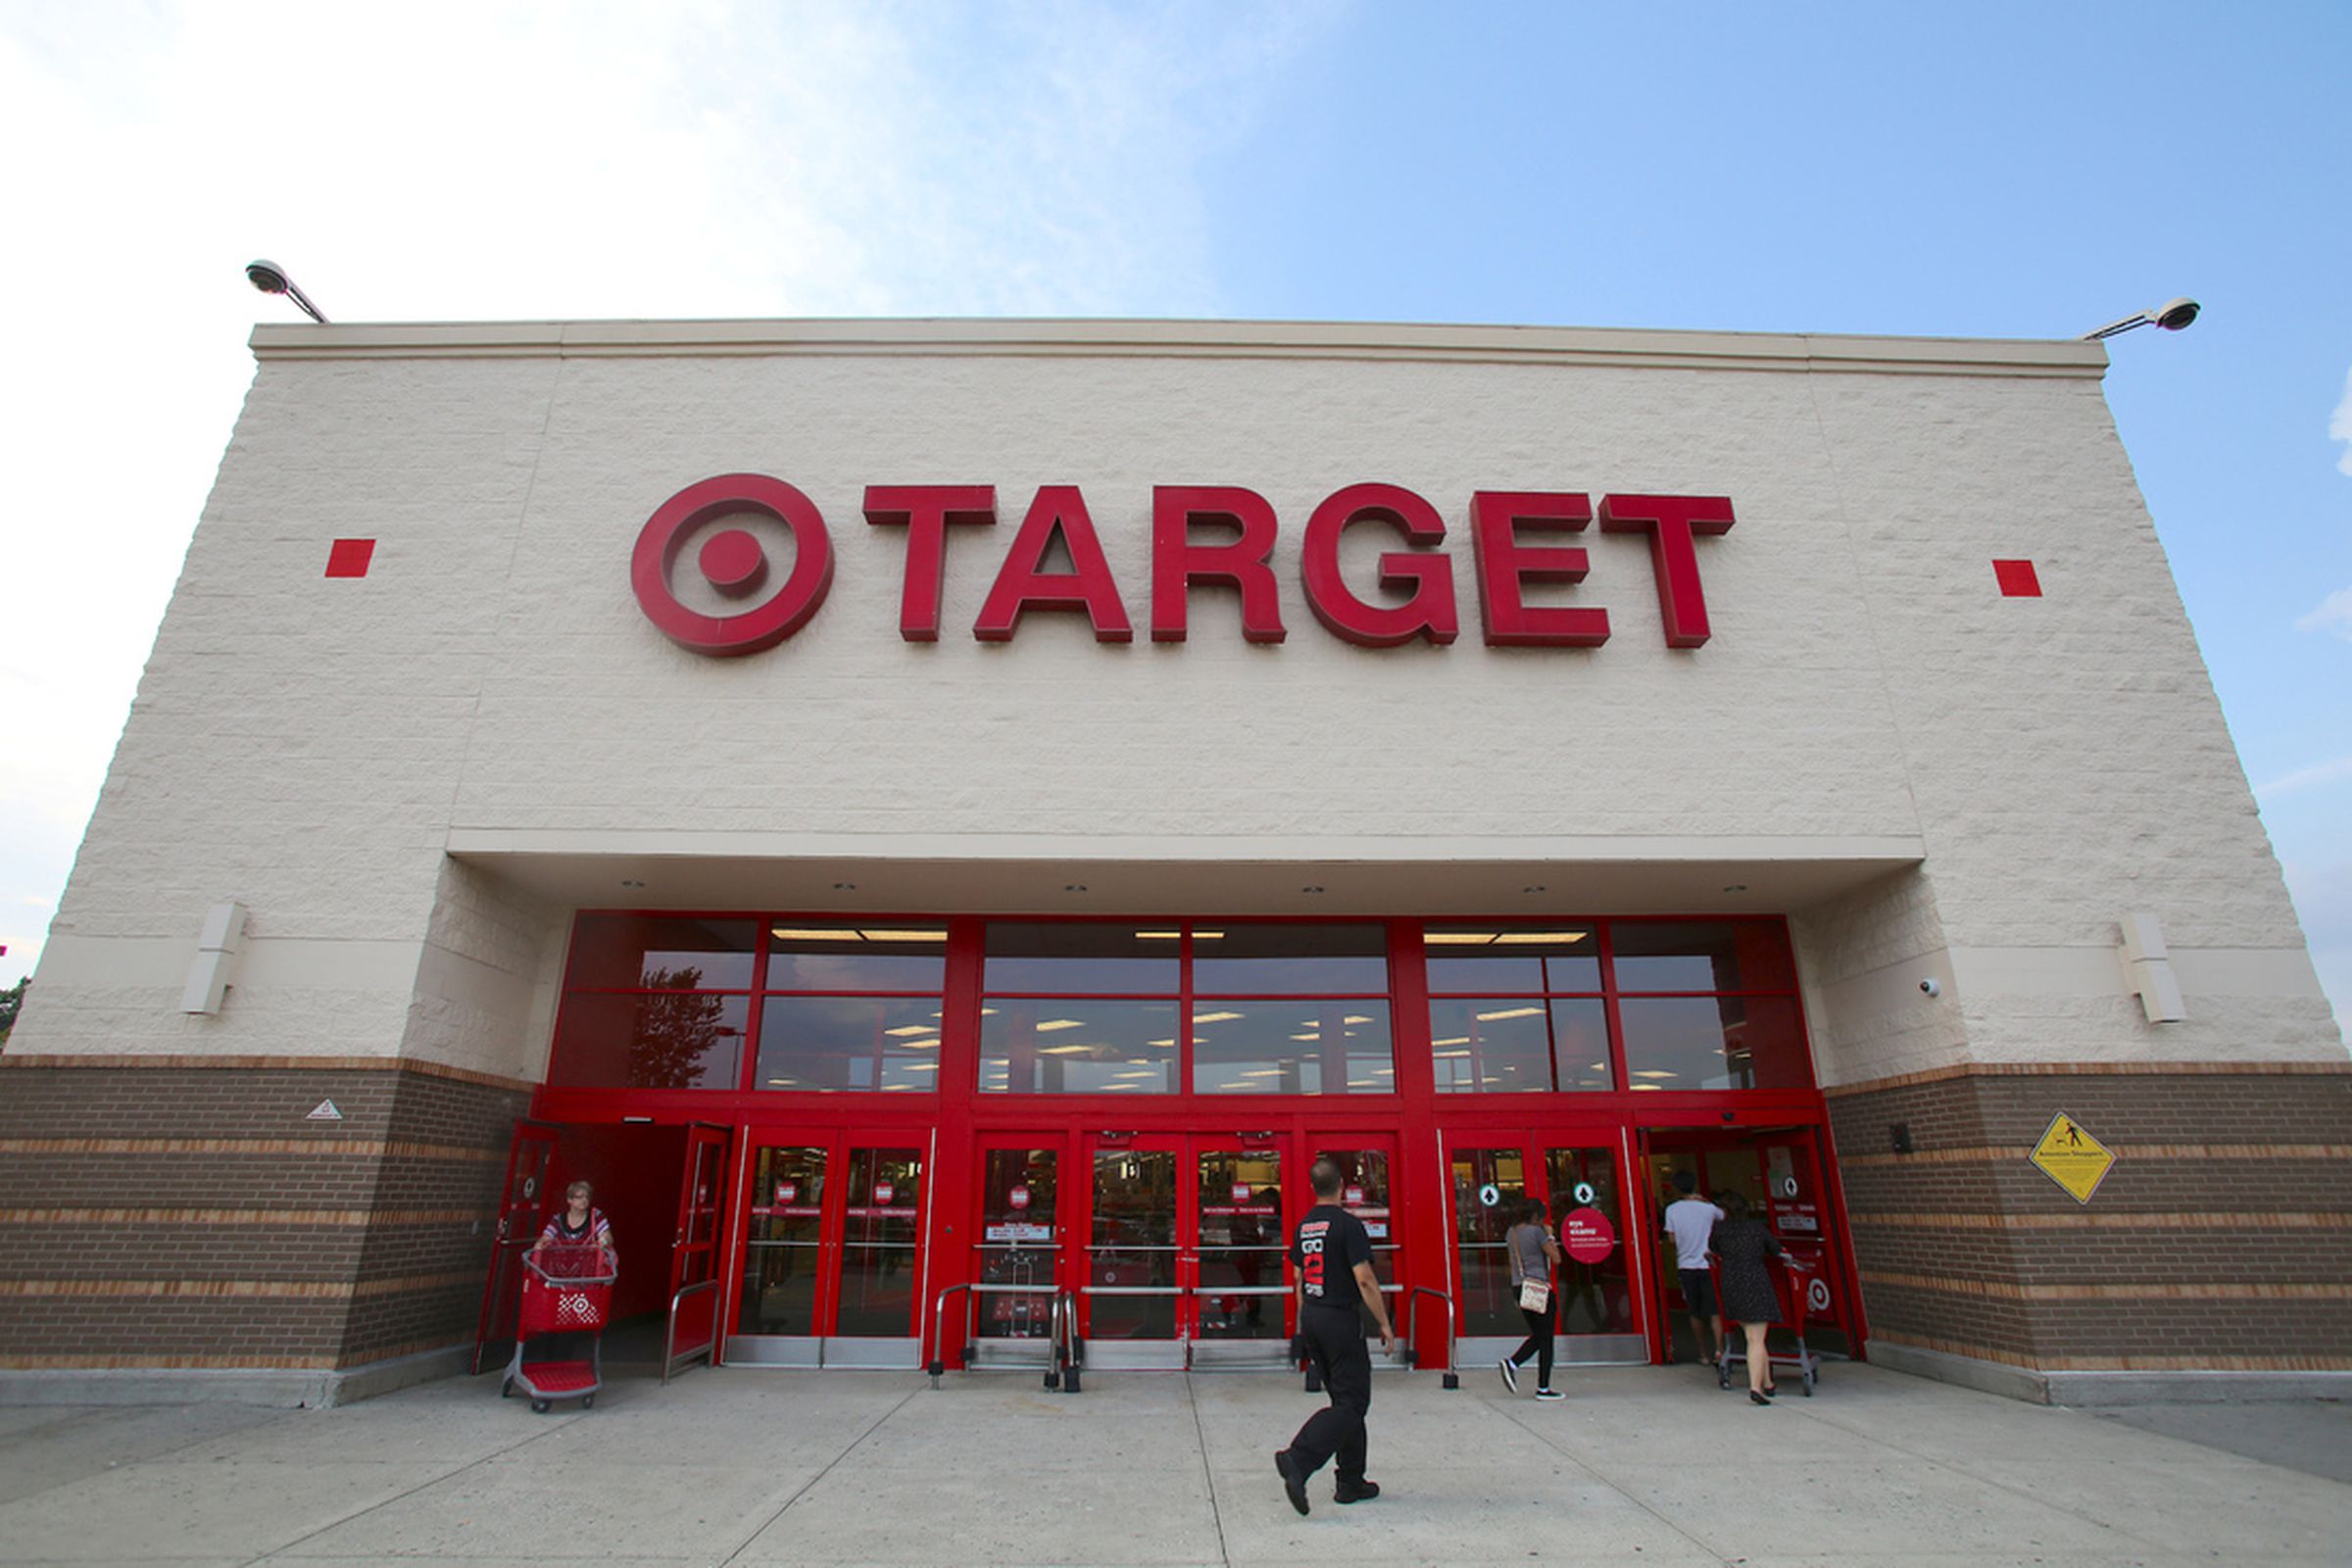 target store (Northfoto / Shutterstock.com)